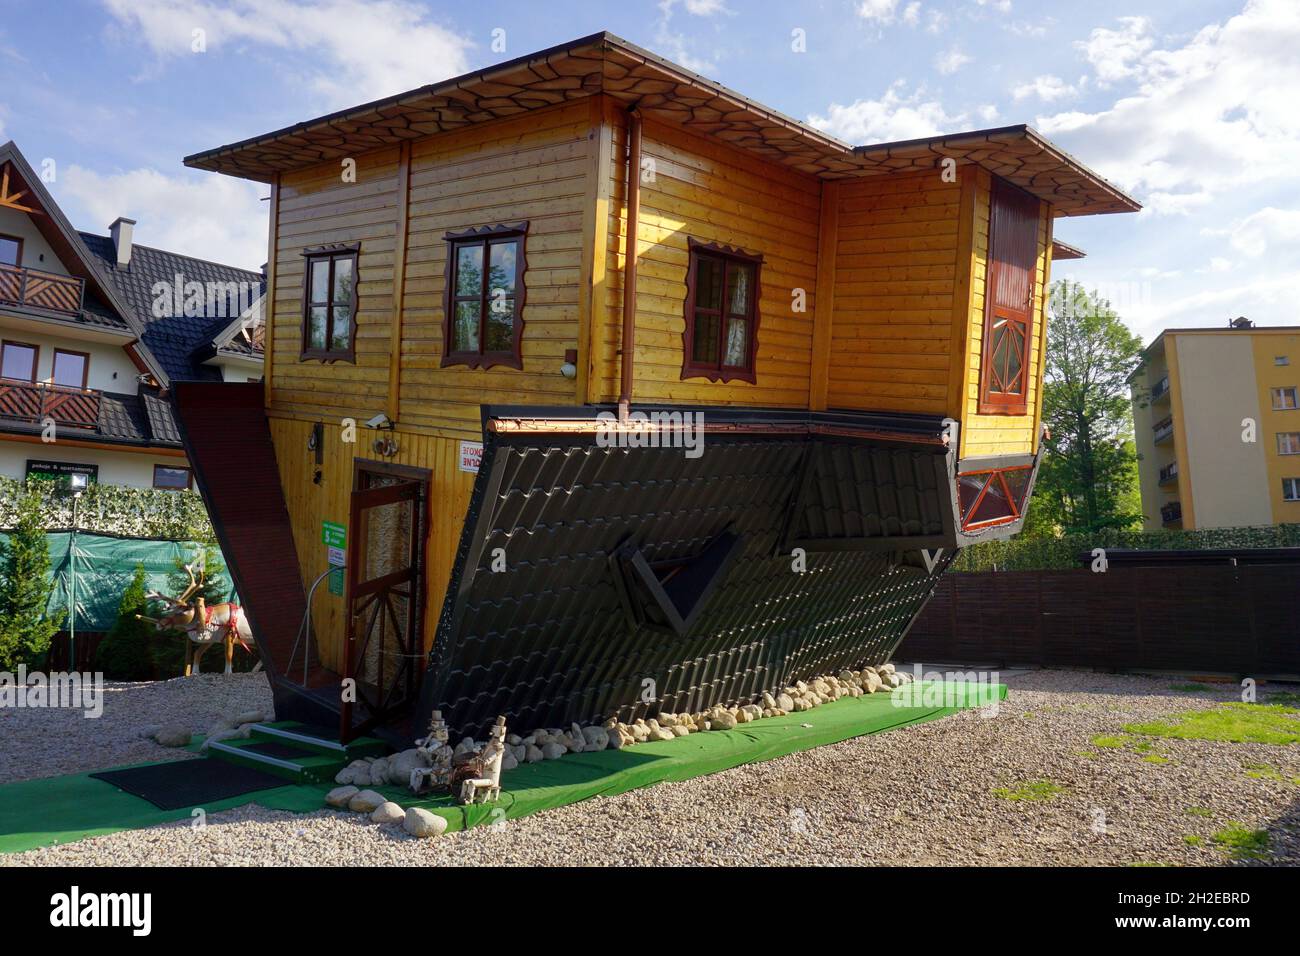 Maison à l'envers, attraction touristique à Zakopane, Pologne, mai 2018 Banque D'Images